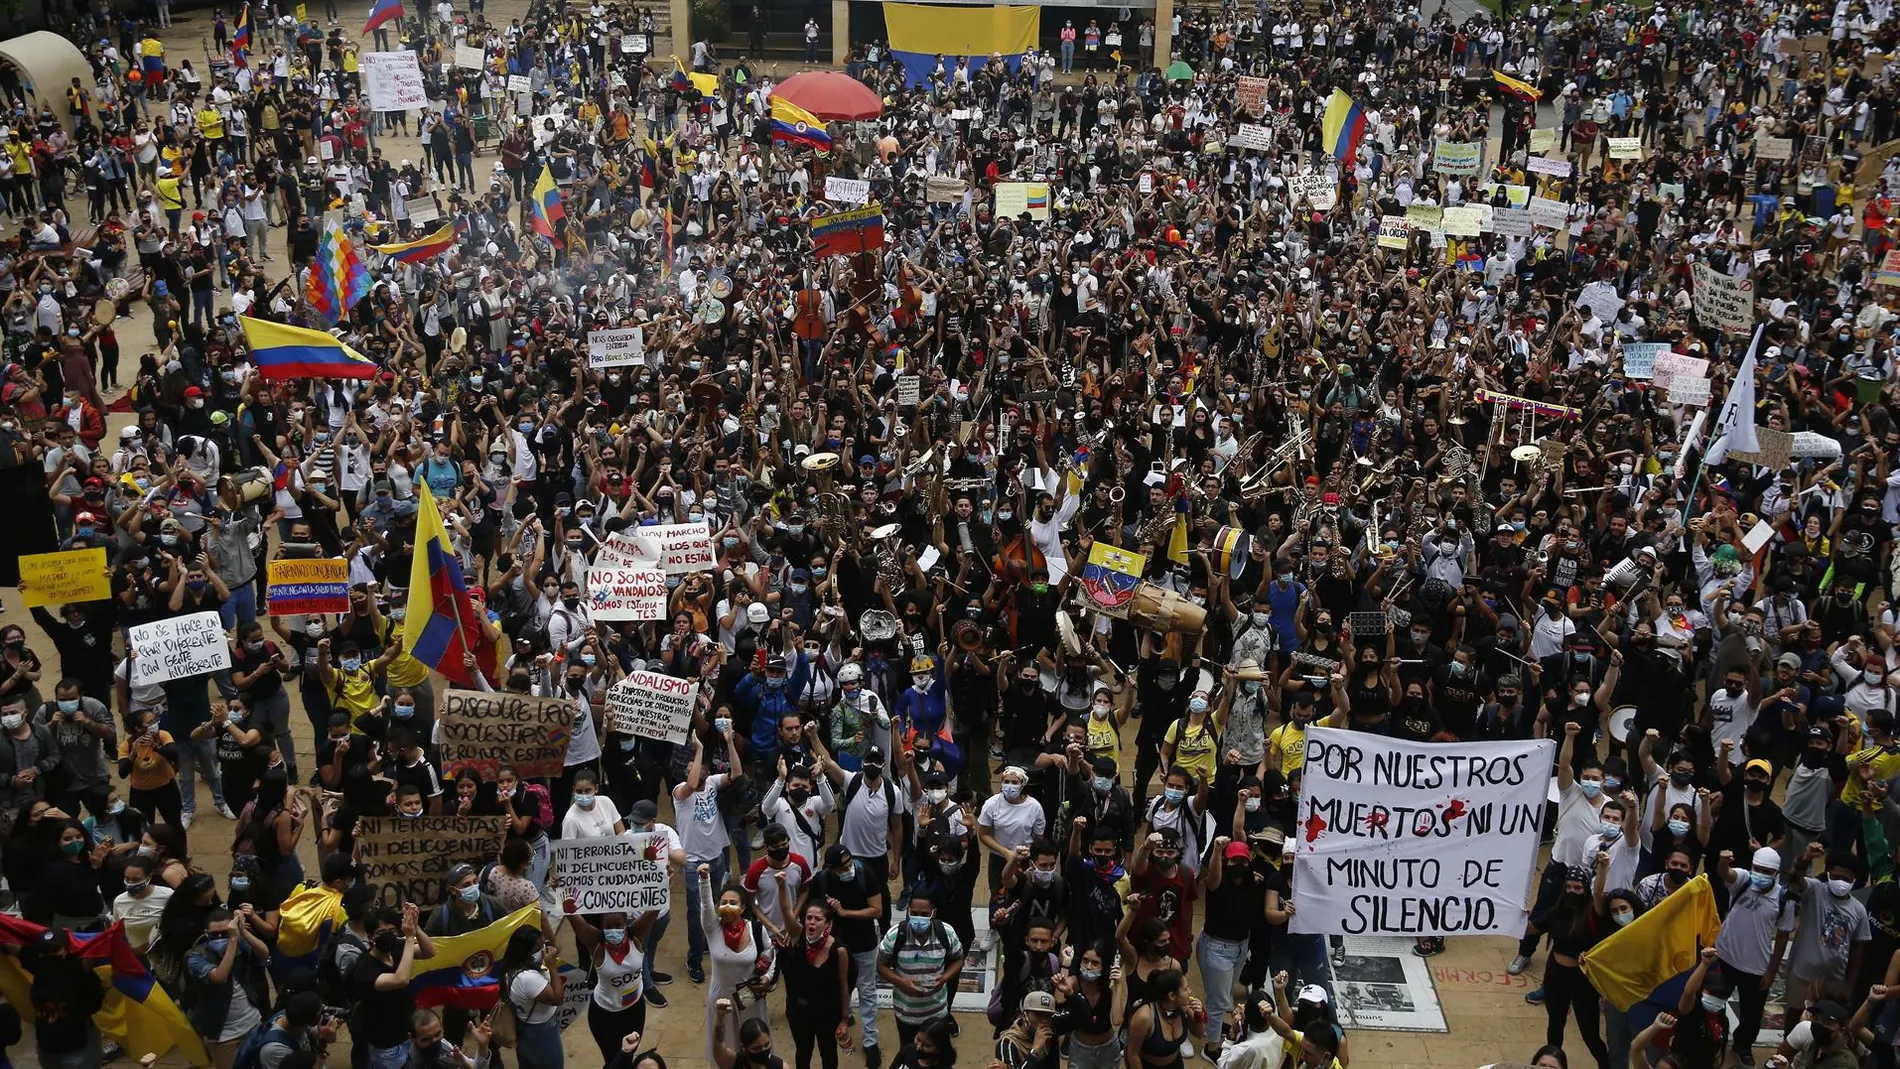 El Gobierno de Colombia no consigue relajar el ambiente pese a su intento de diálogo